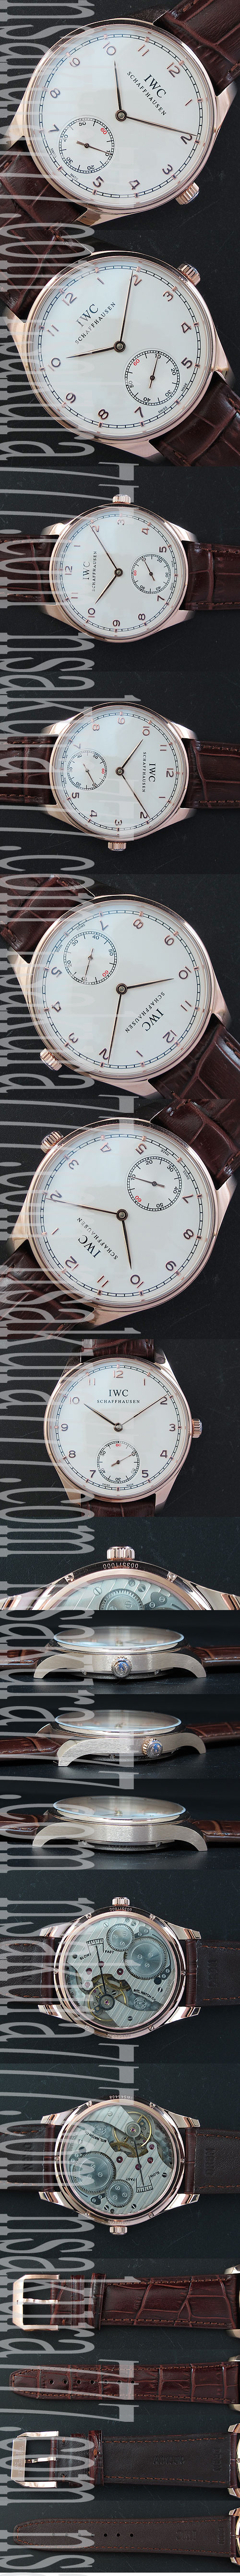 自信持てる腕時計IWC ポルトフィーノ(ブラウン革ベルト)